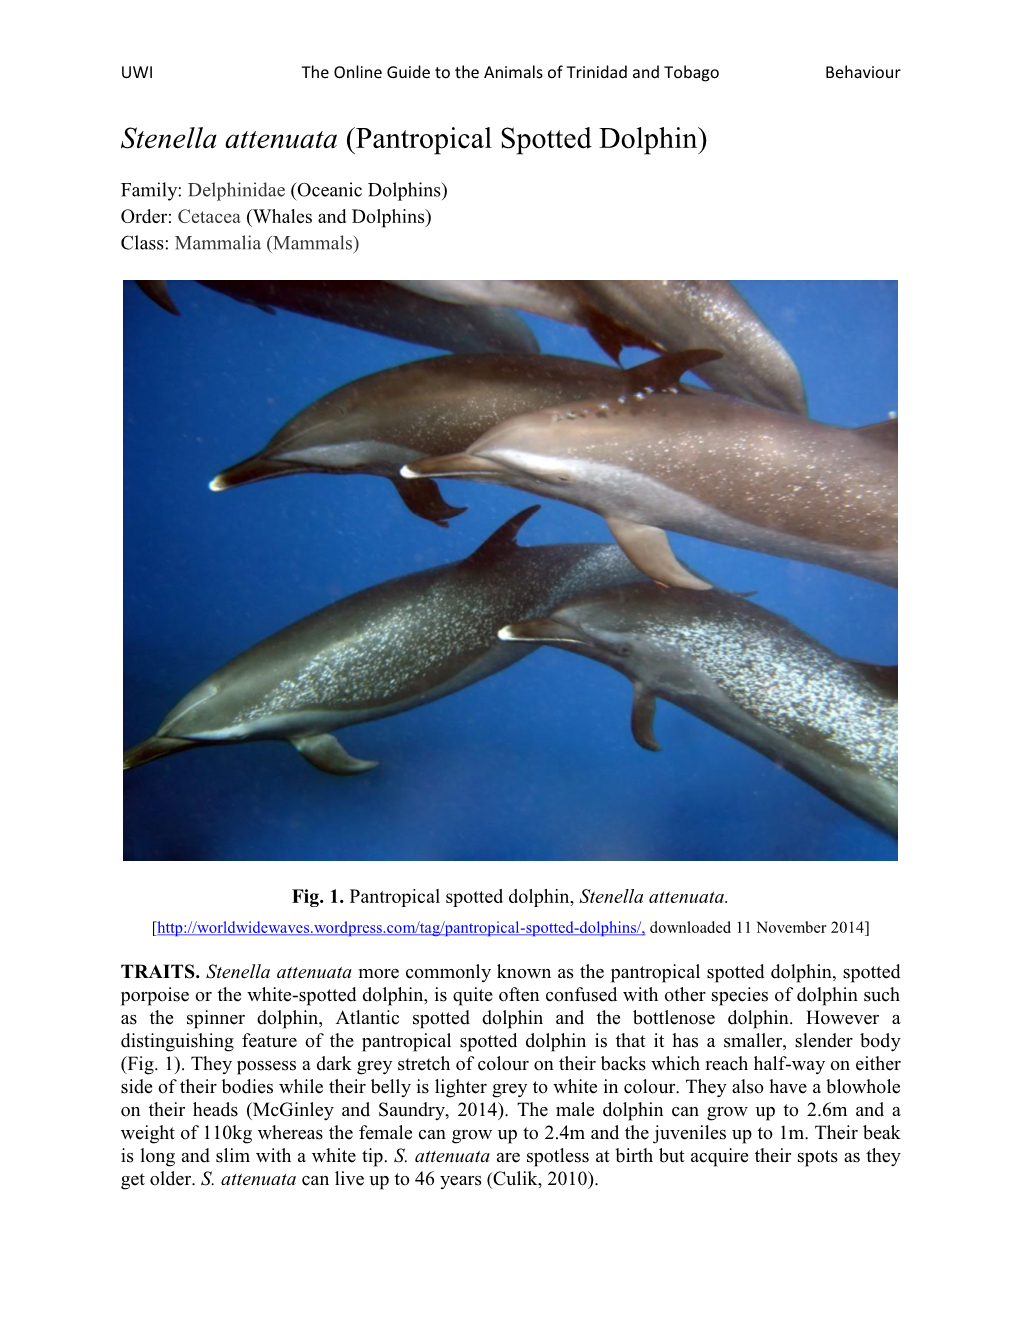 Stenella Attenuata (Pantropical Spotted Dolphin)